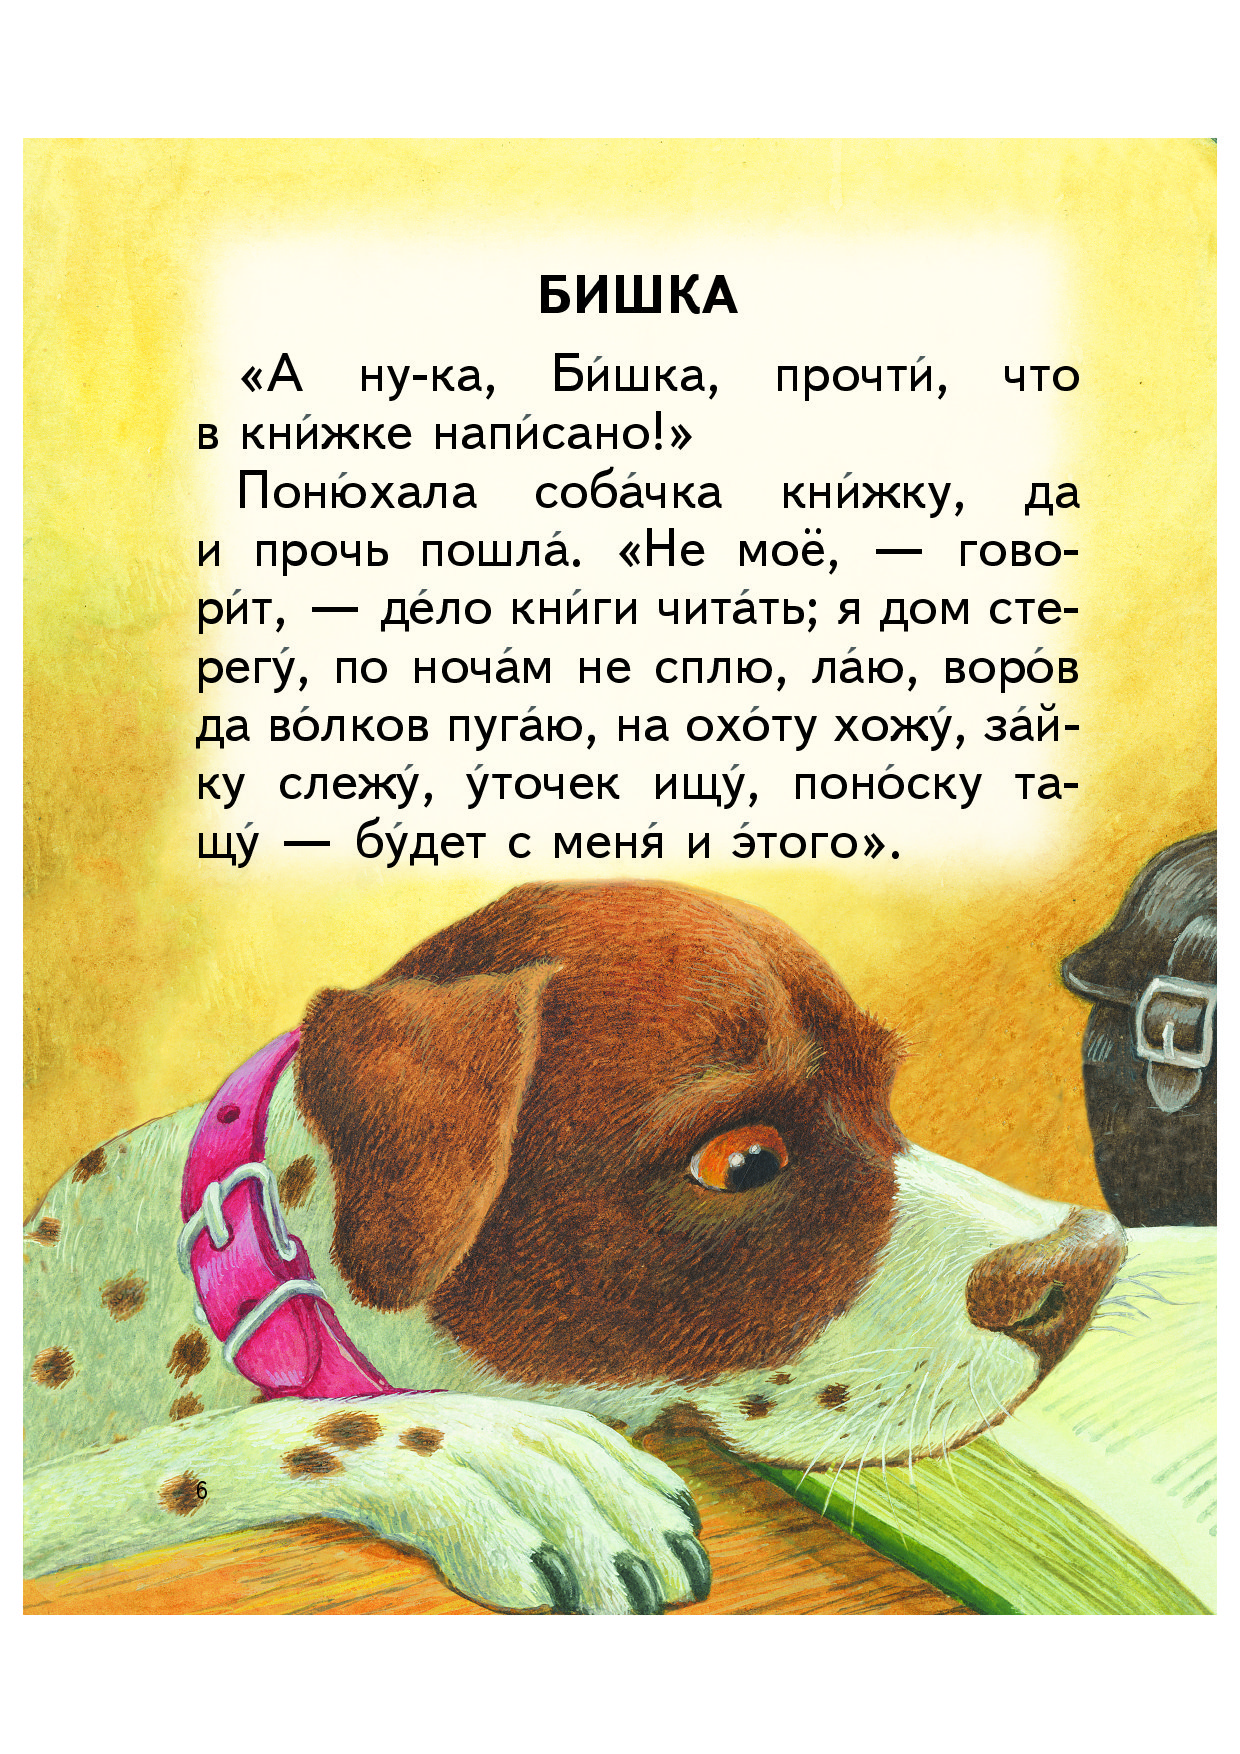 Сказку хочу прочитать. Собачка Бишка Ушинский. Маленькие рассказы. Небольшой рассказ.